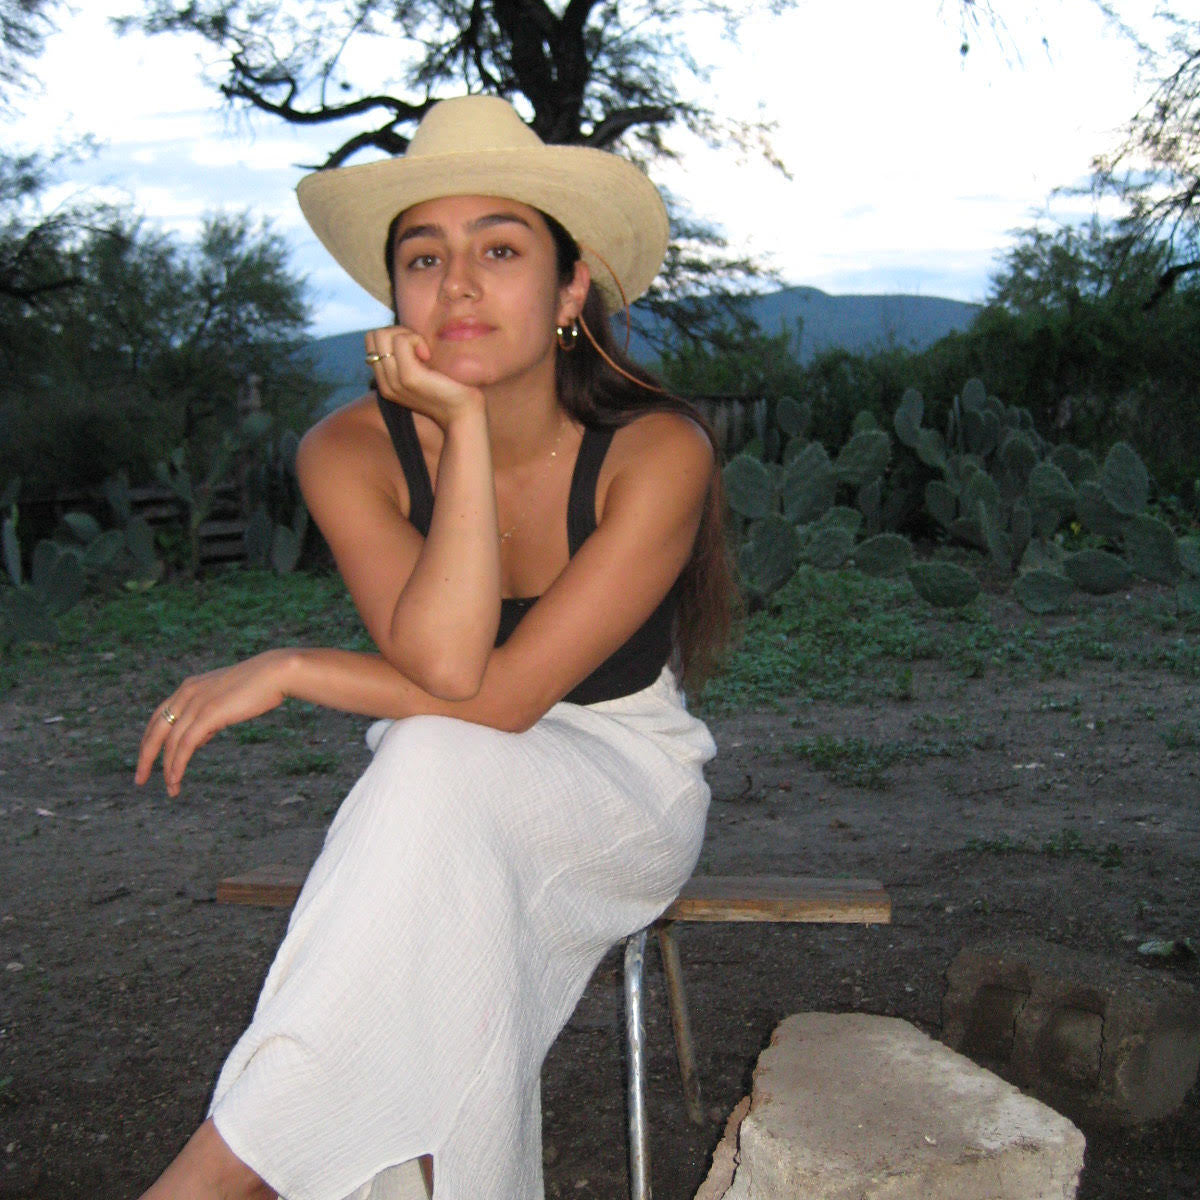 MEET THE MAKER: Karissa Huerta of Chi Chi Ceramicas